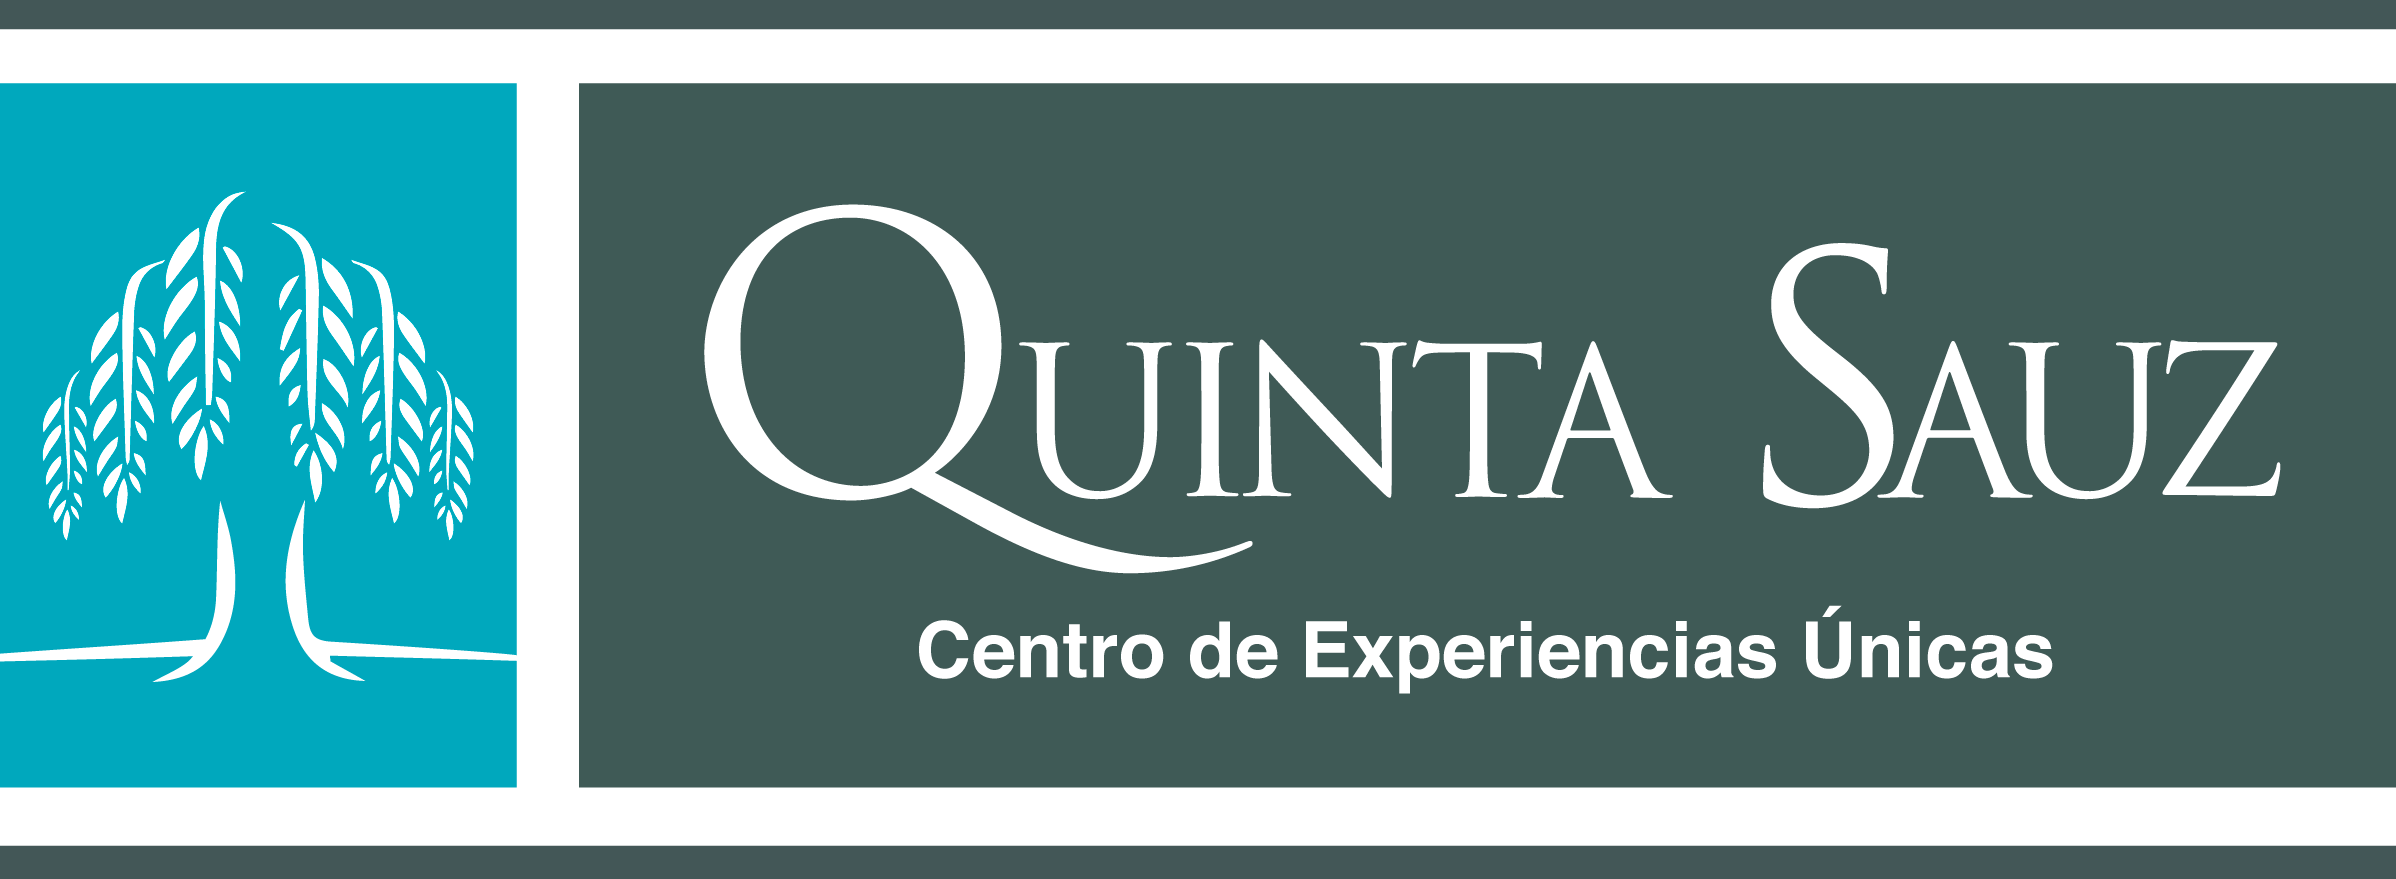 Logotipo Quinta Sauz